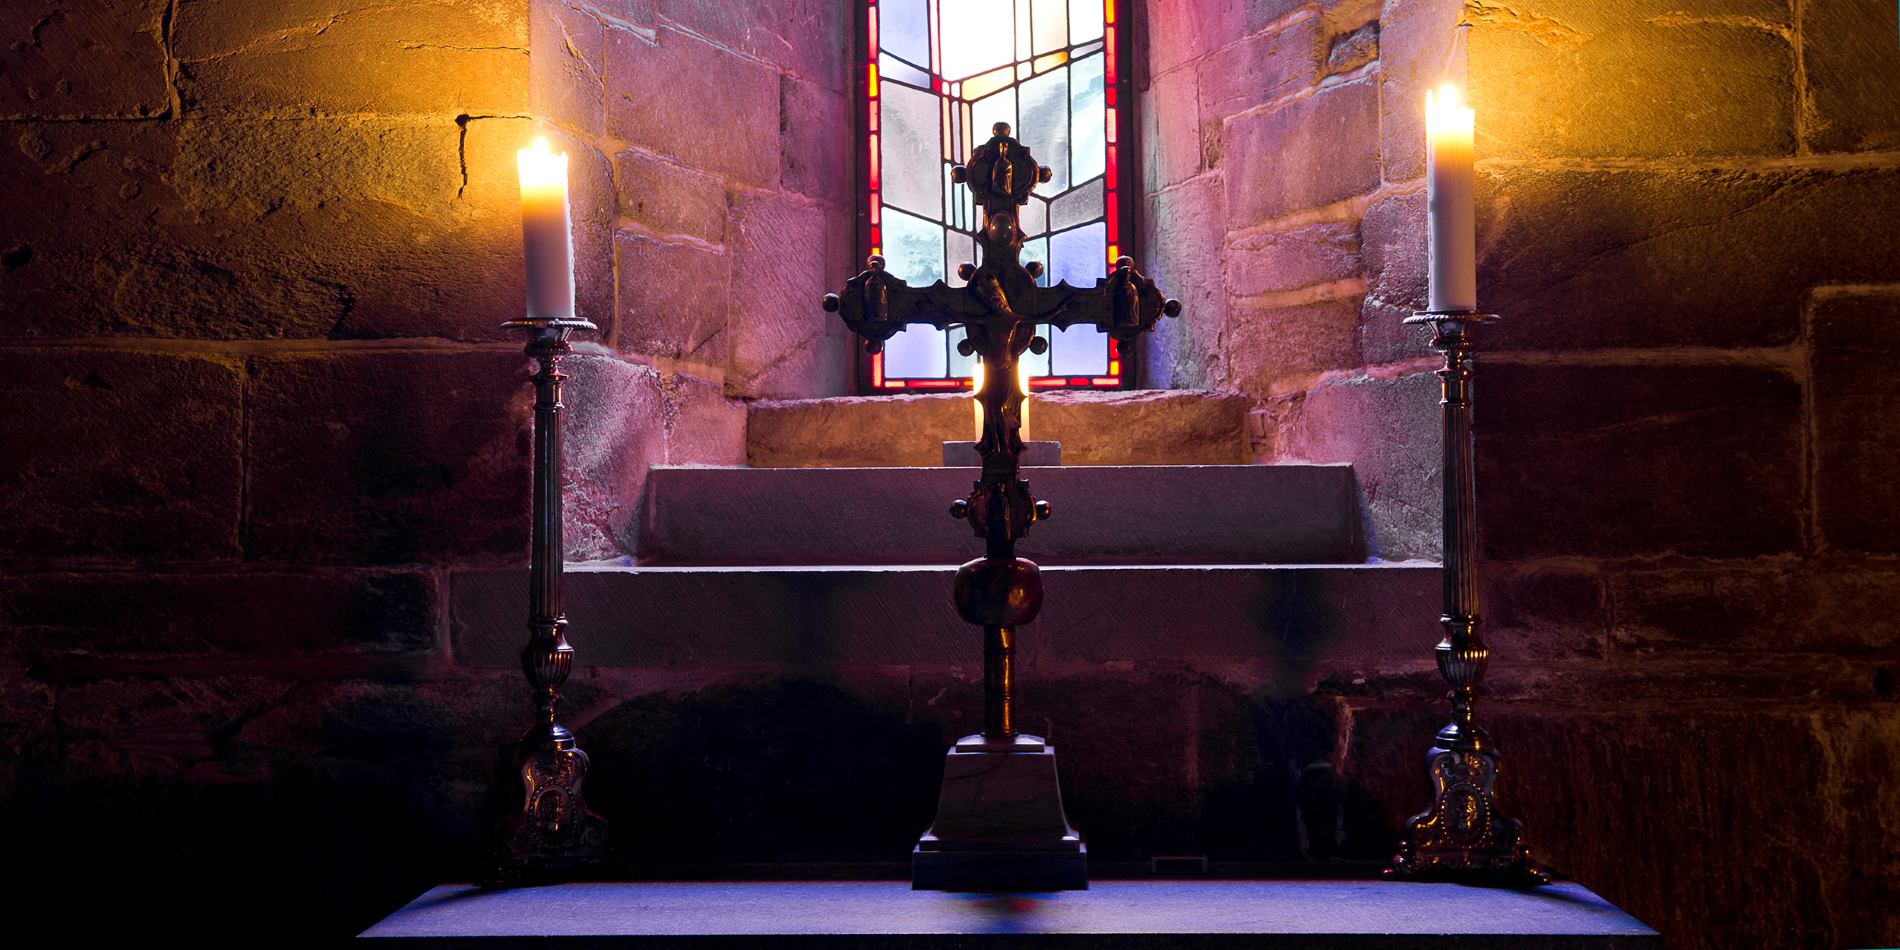 Les trésors cachés de la cathédrale de Nidaros. L’image montre une croix et deux bougies allumées à l’intérieur de la cathédrale de Nidaros